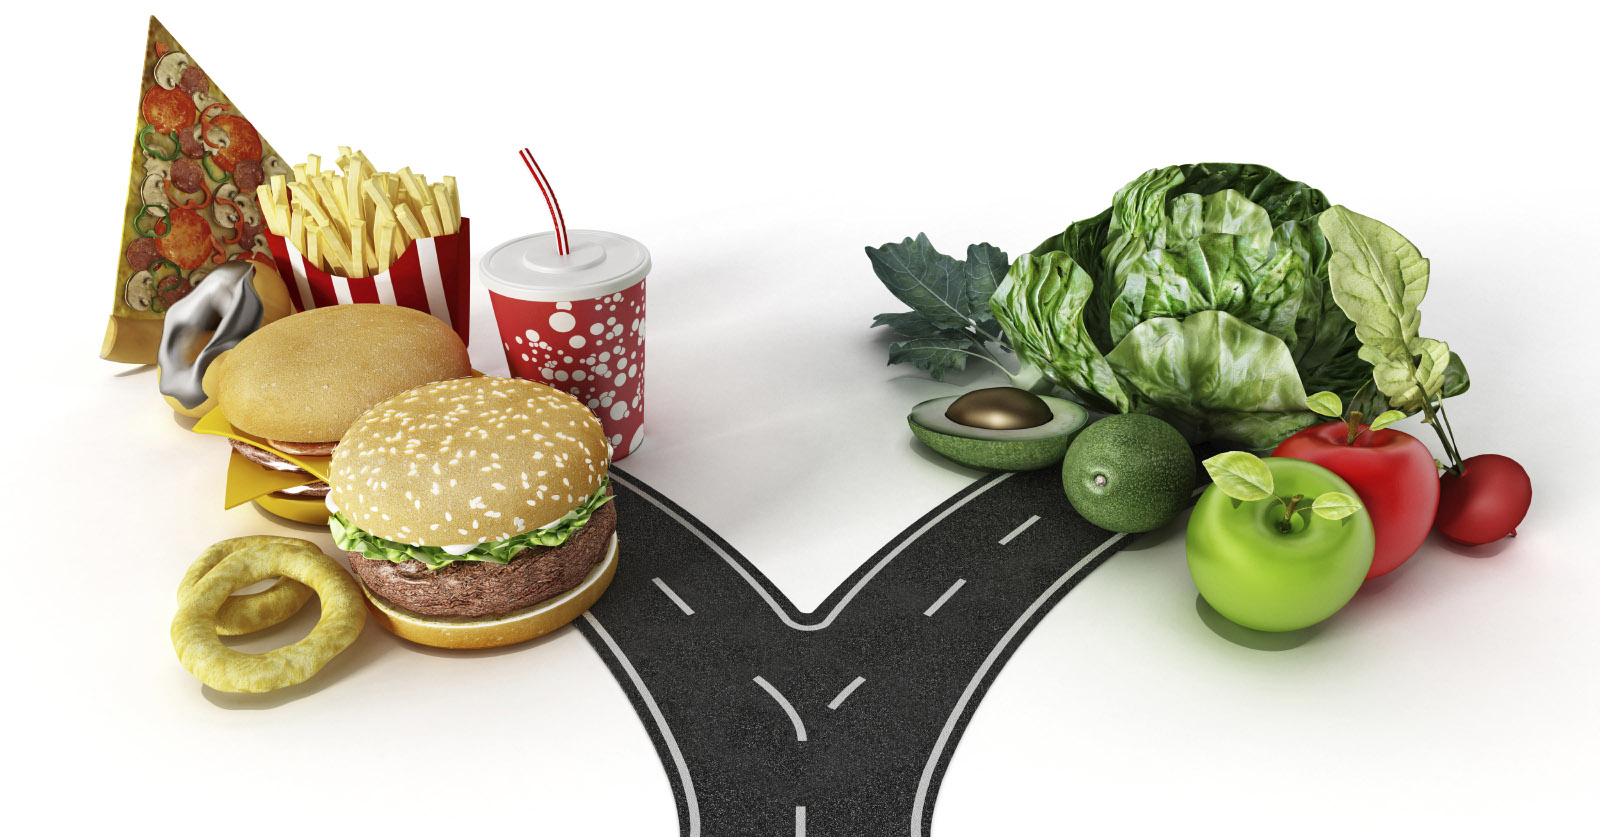 3172-junk-food-vs-healthy-food.jpg